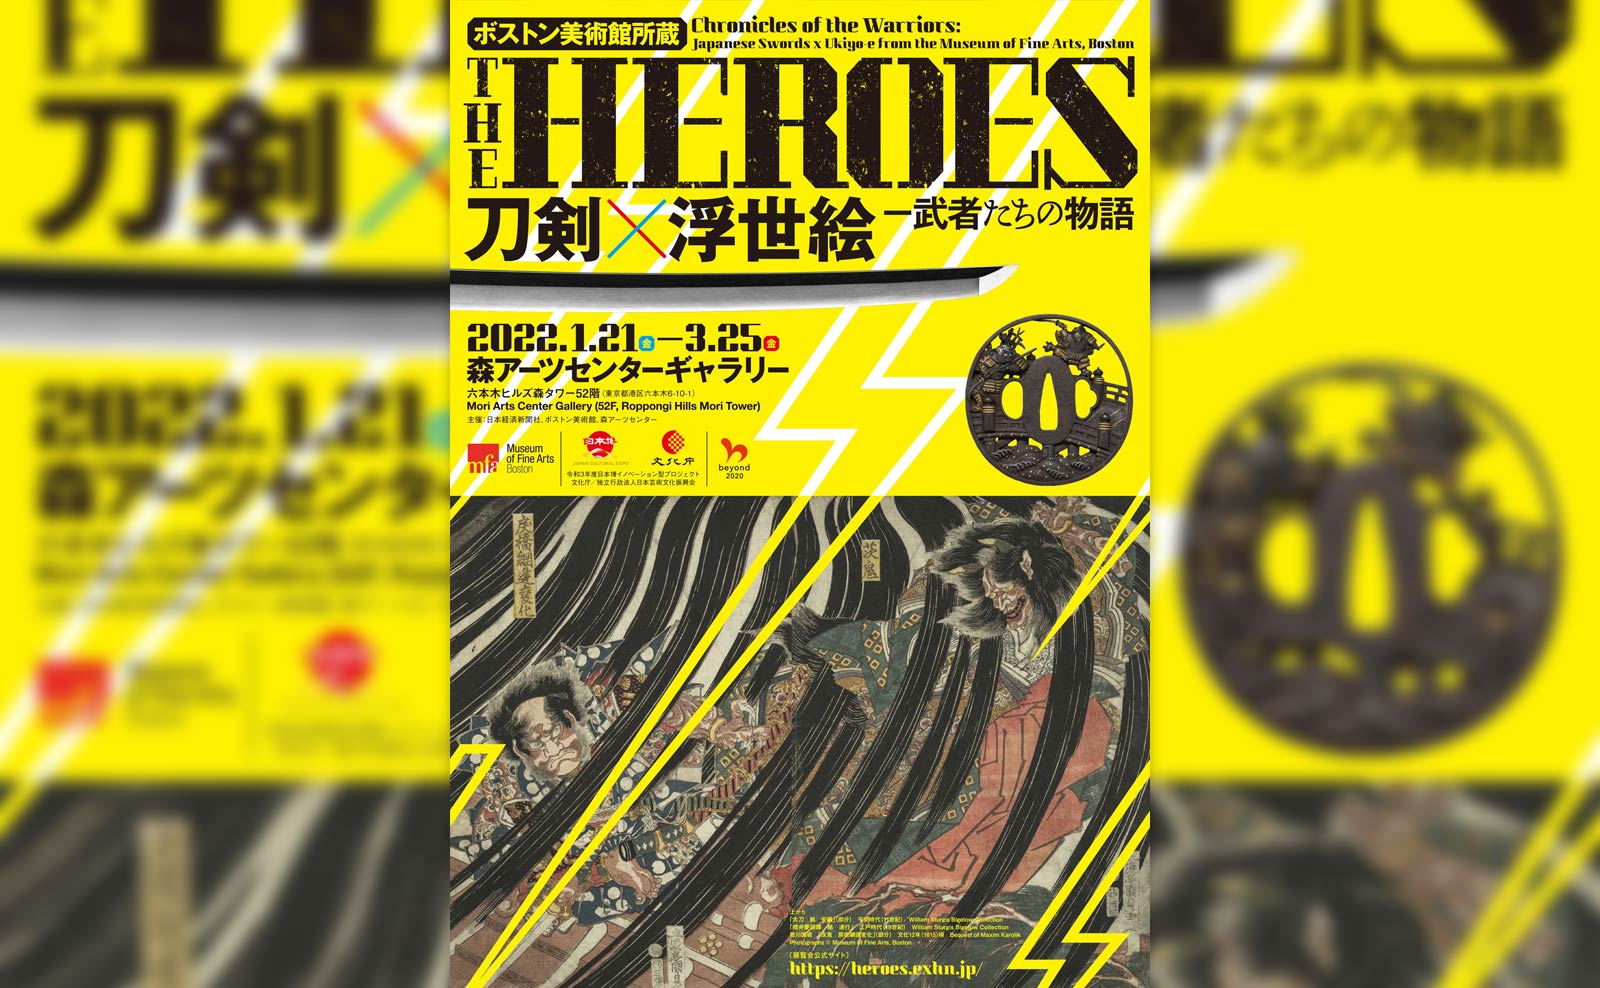 ボストン美術館所蔵「THE HEROES 刀剣×浮世絵−武者たちの物語」のフライヤー写真